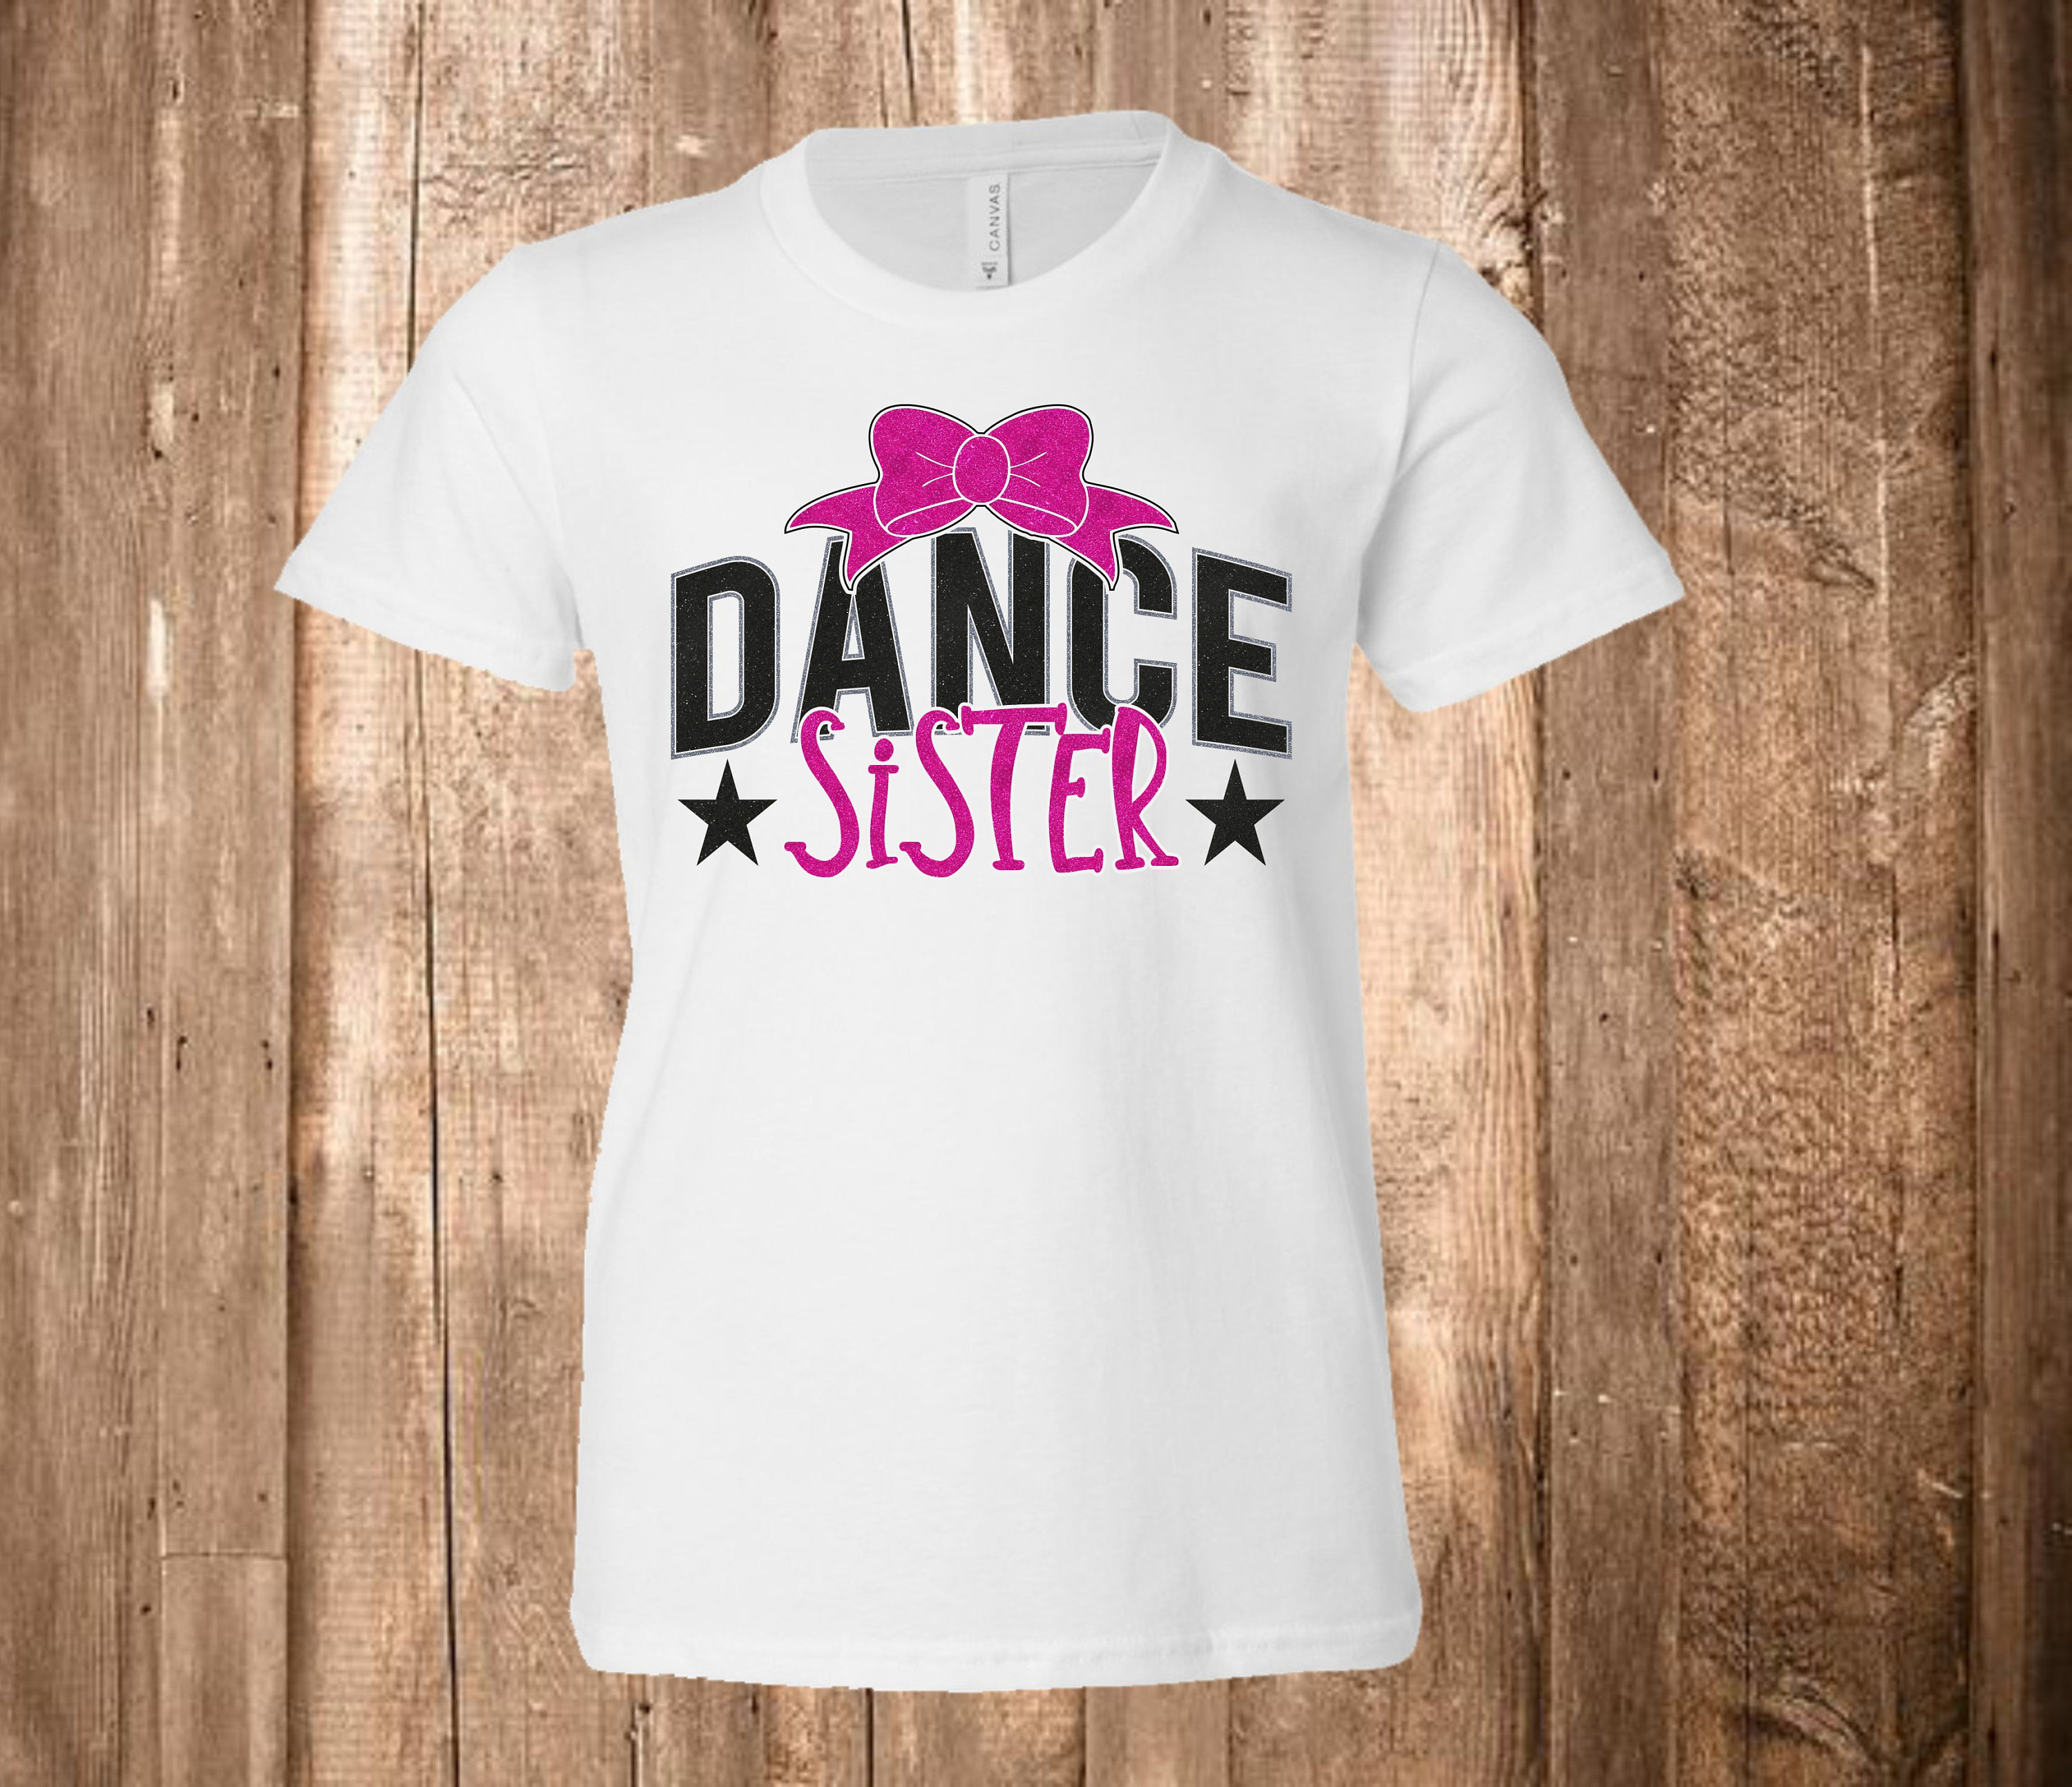 Cheer Sister Shirt Bluebonnets Dance Cheer Shirt Dance Sister Shirt Sister Youth Tee Dance Shirt Glitter Shirt Dance Sister